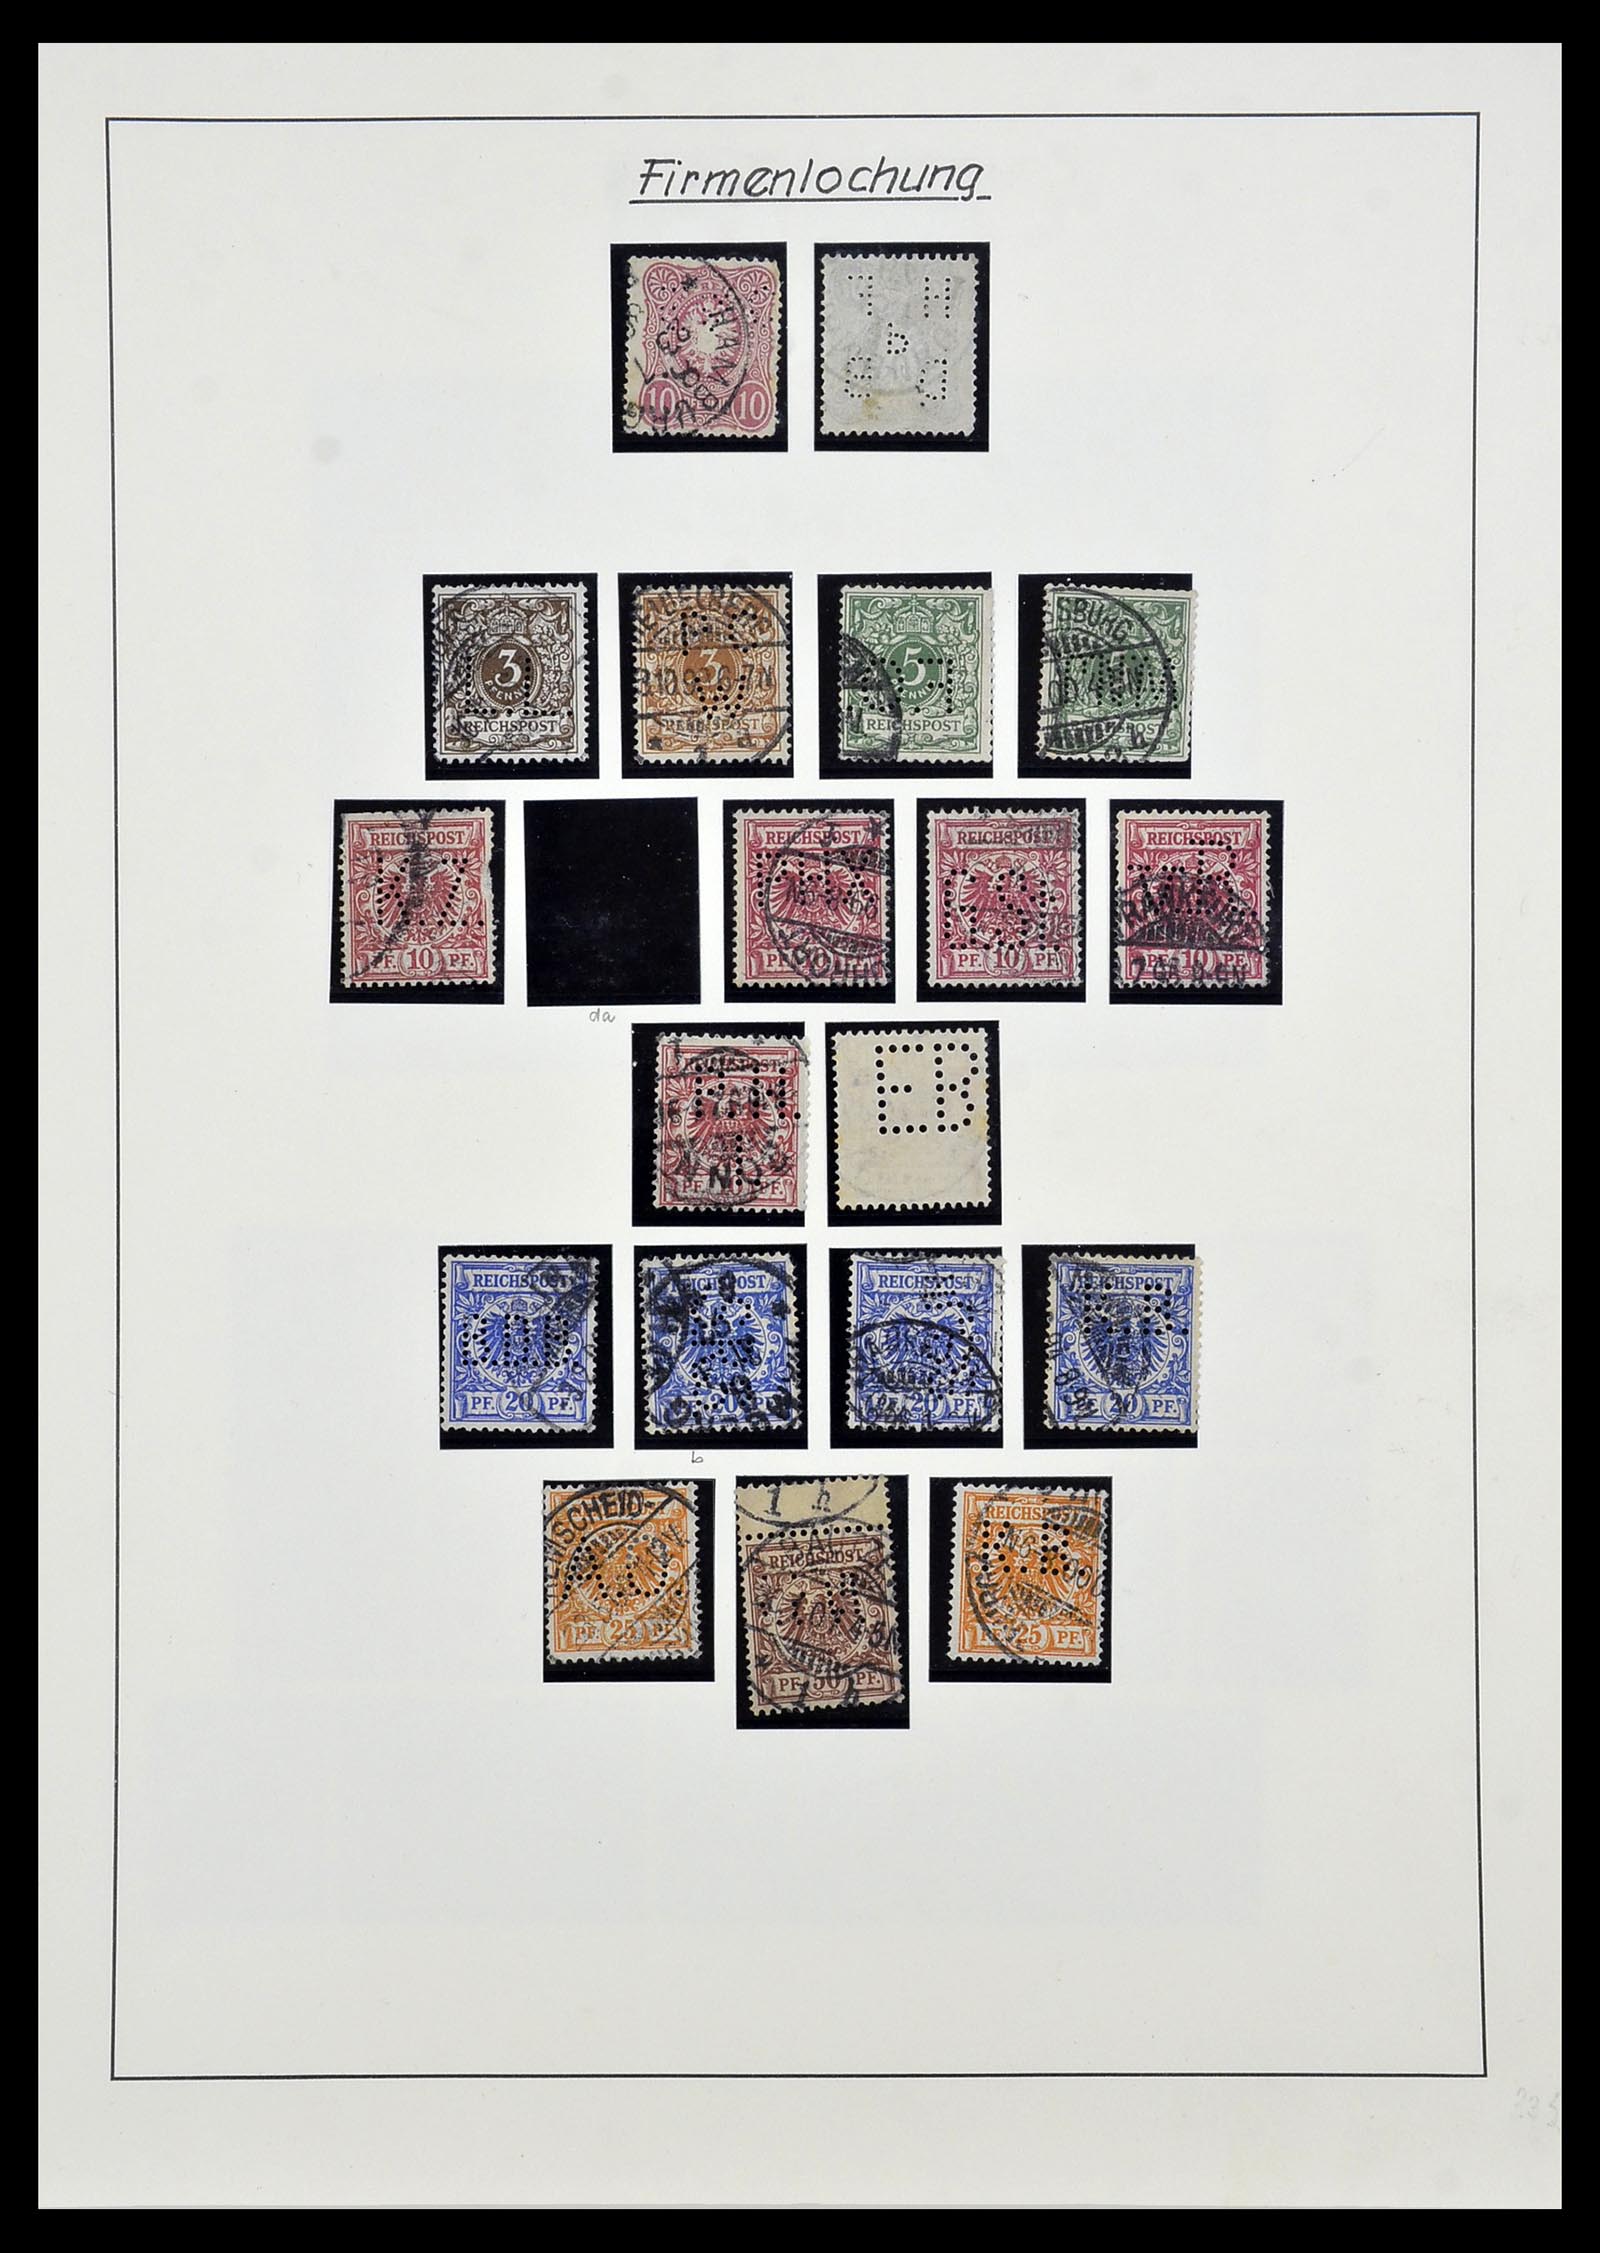 34409 001 - Stamp Collection 34409 German Reich perfins.